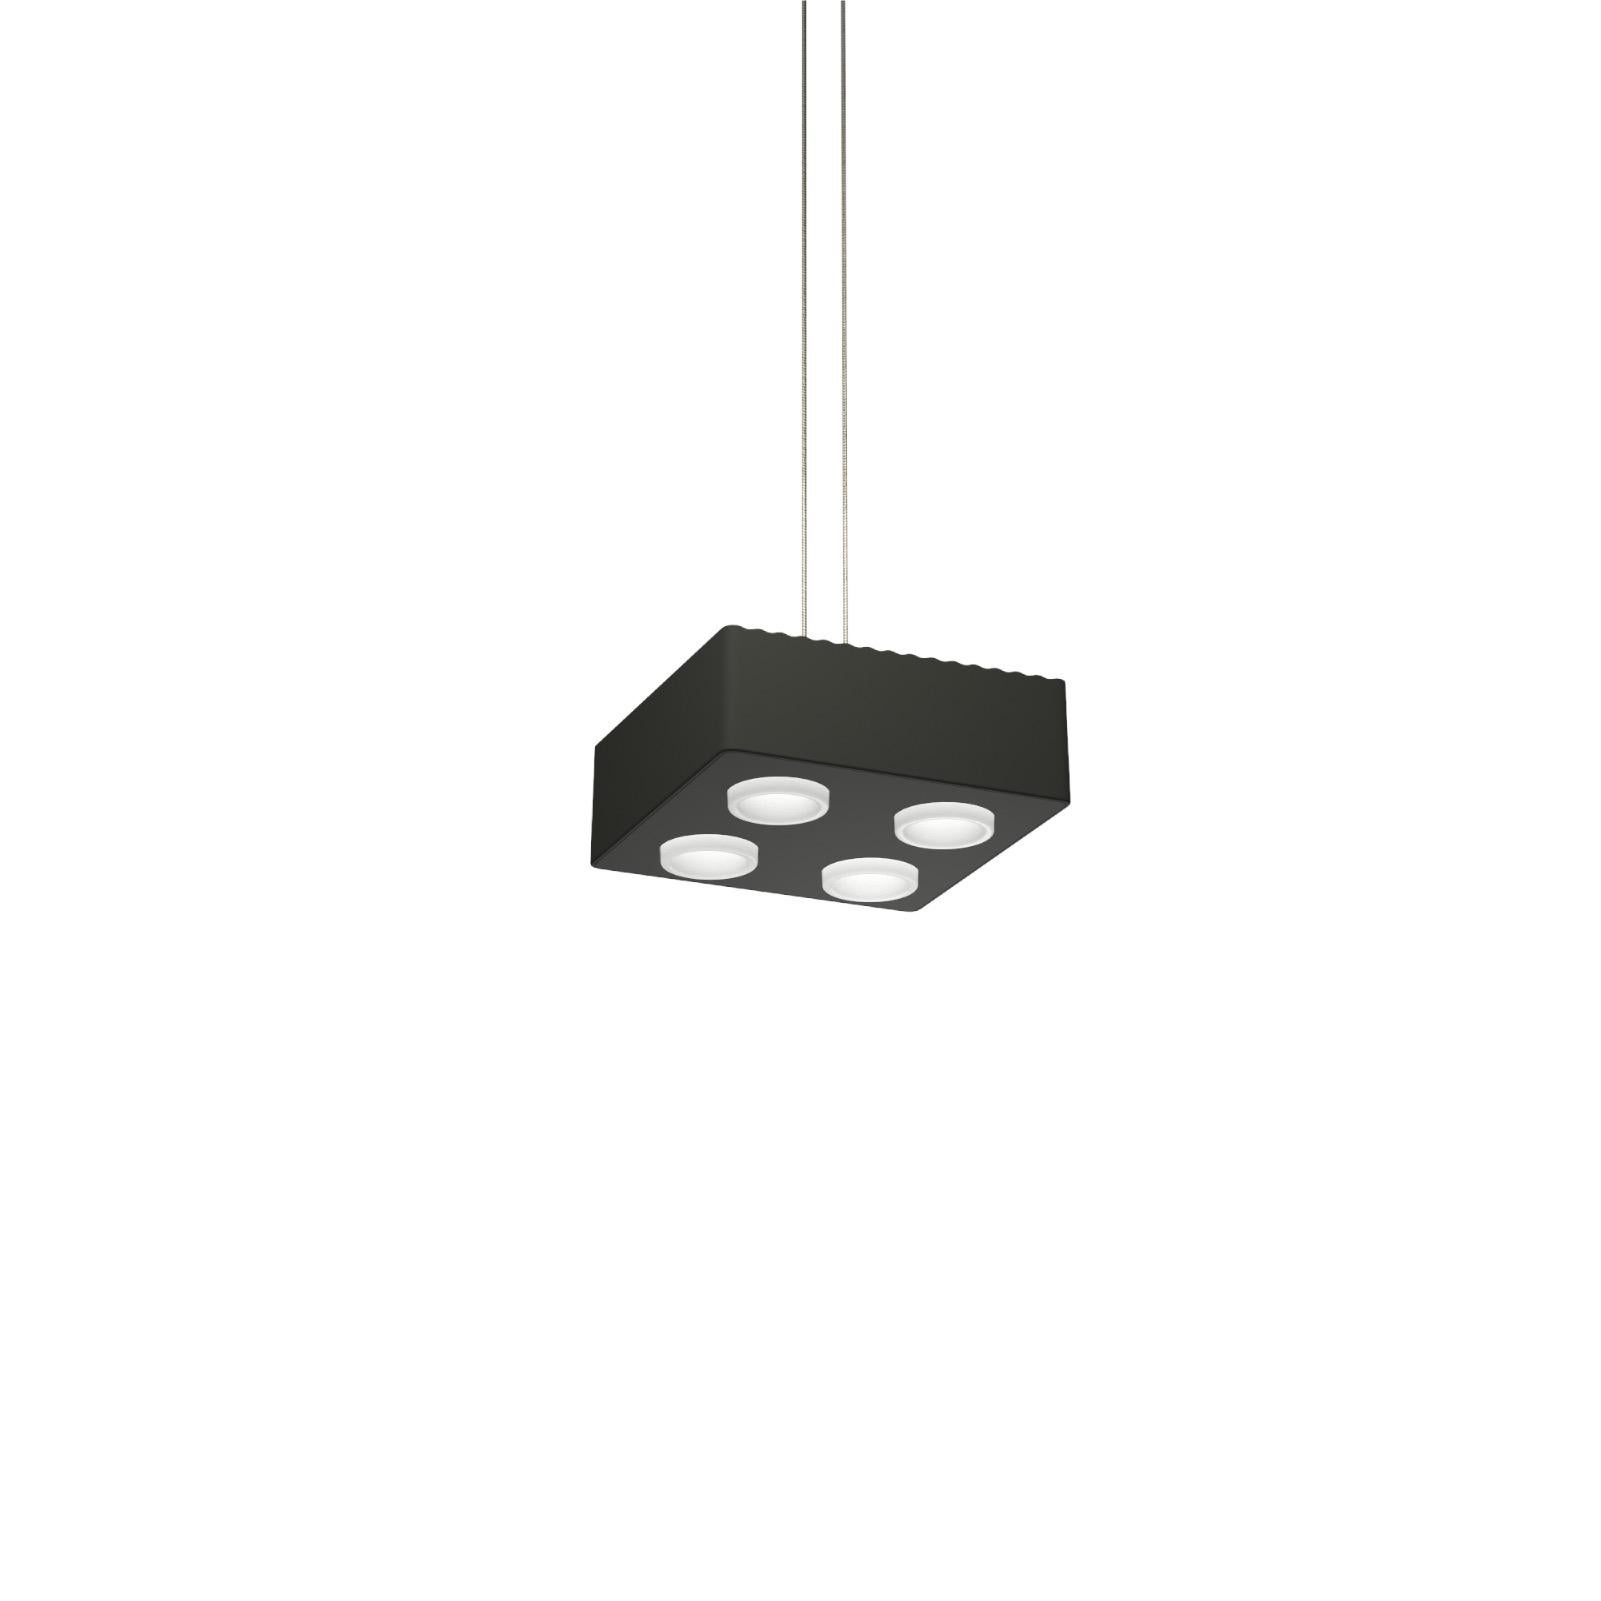 Lampe pendante Domino de Sylvain Willenz x AGO Lighting
Lampe suspendue simple anthracite
Matériaux : Aluminium
Source lumineuse : LED intégrée (COB), DC
Watt. 15 W
Temp. de couleur 2700 / 3000K
Longueur du câble : 3M
Couleurs disponibles